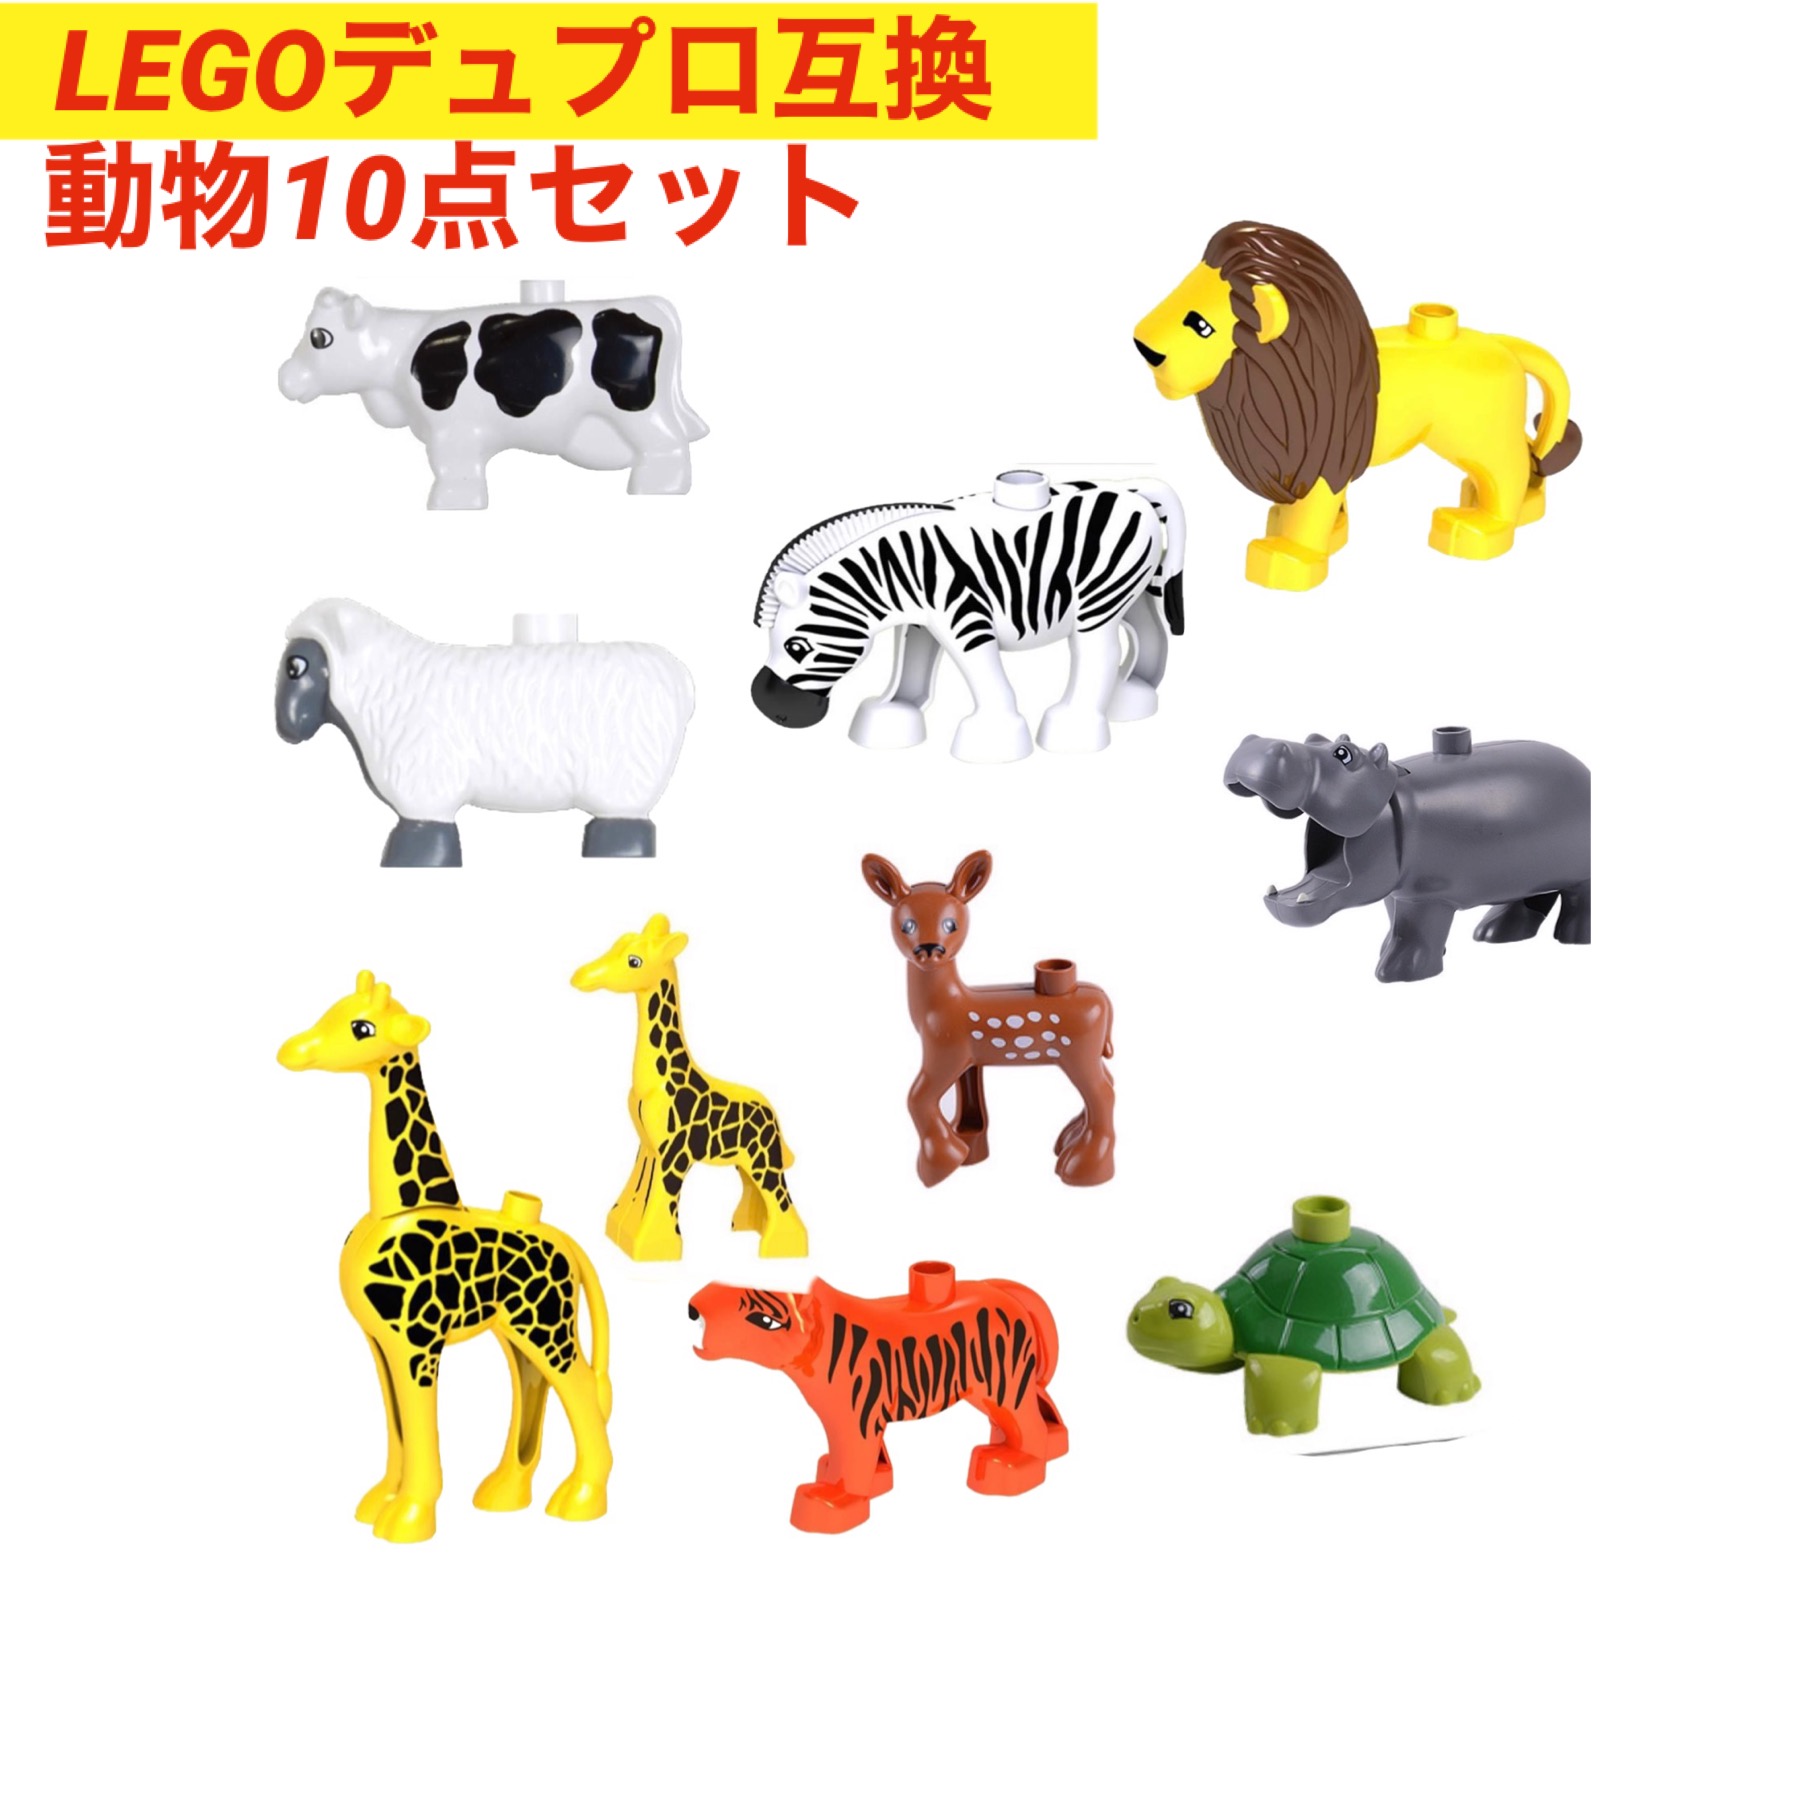 【楽天市場】レゴデュプロ ブロック 互換 動物 アニマル 10点セット